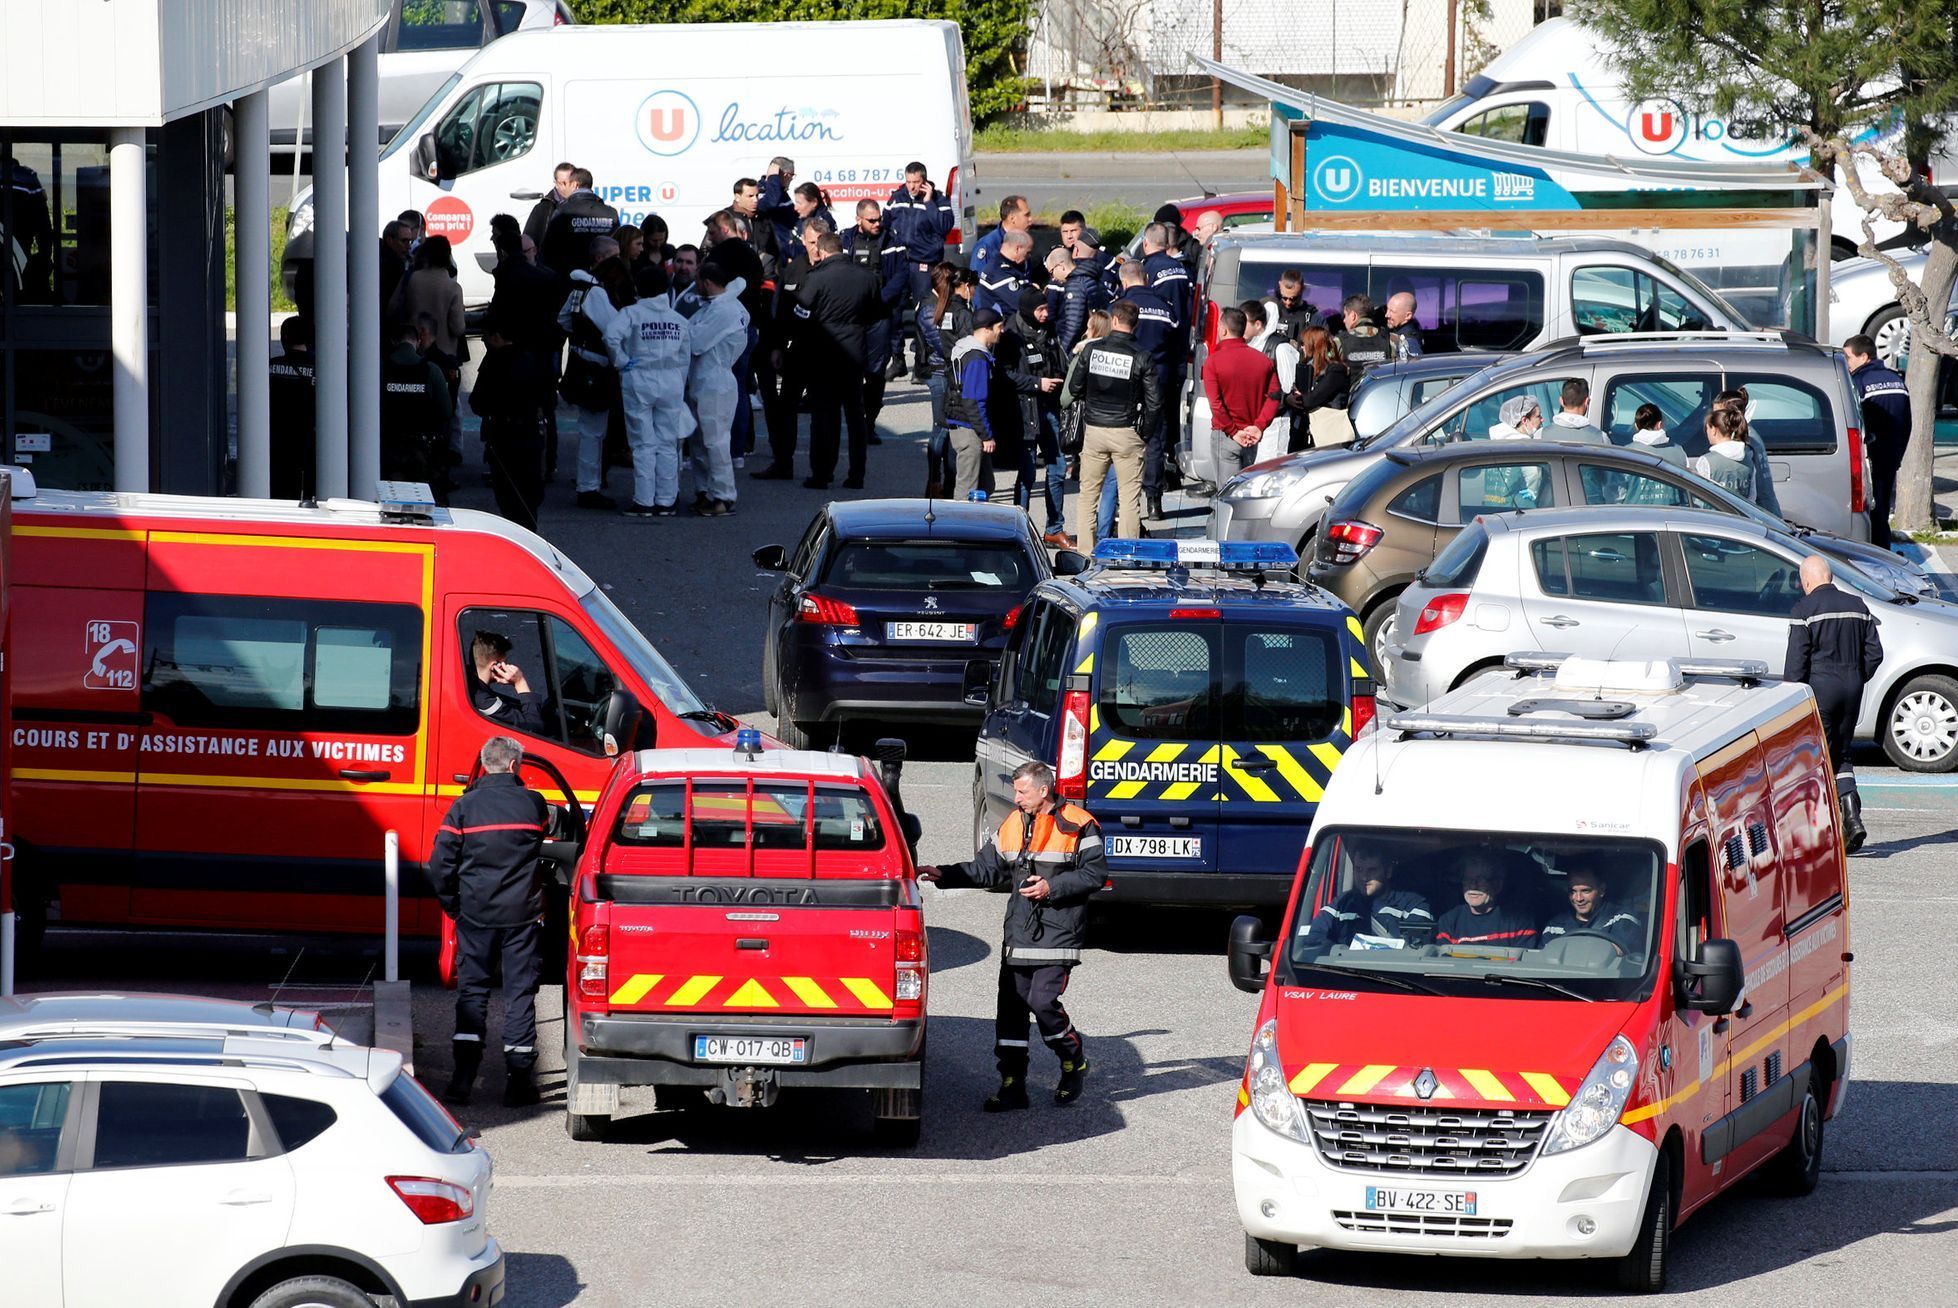 Útok ve Francii - Trebes - terorismus - policie